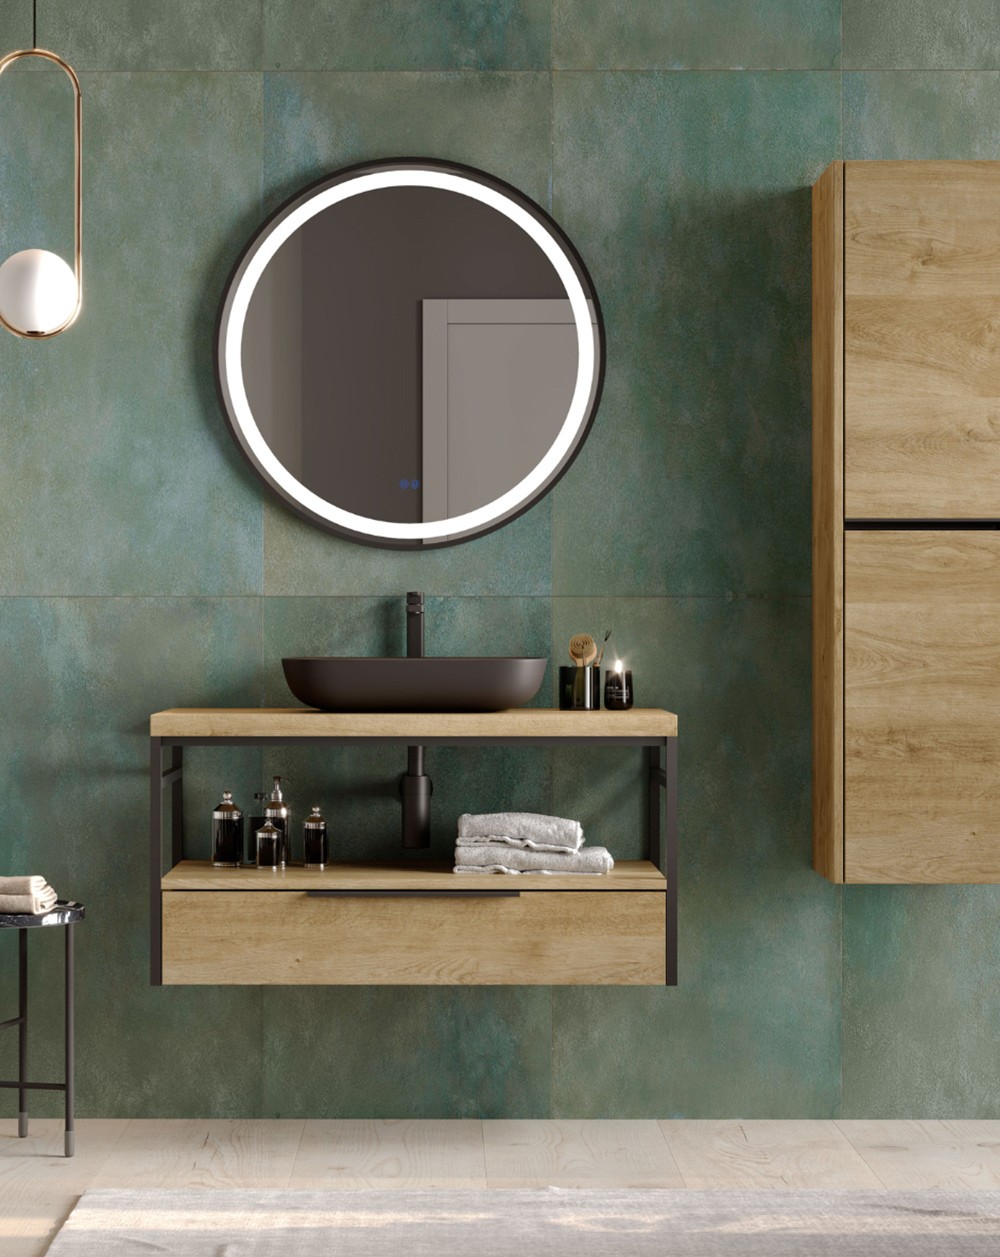 Mueble de Baño Suspendido Diseño Industrial con Cajón Inferior Kirt